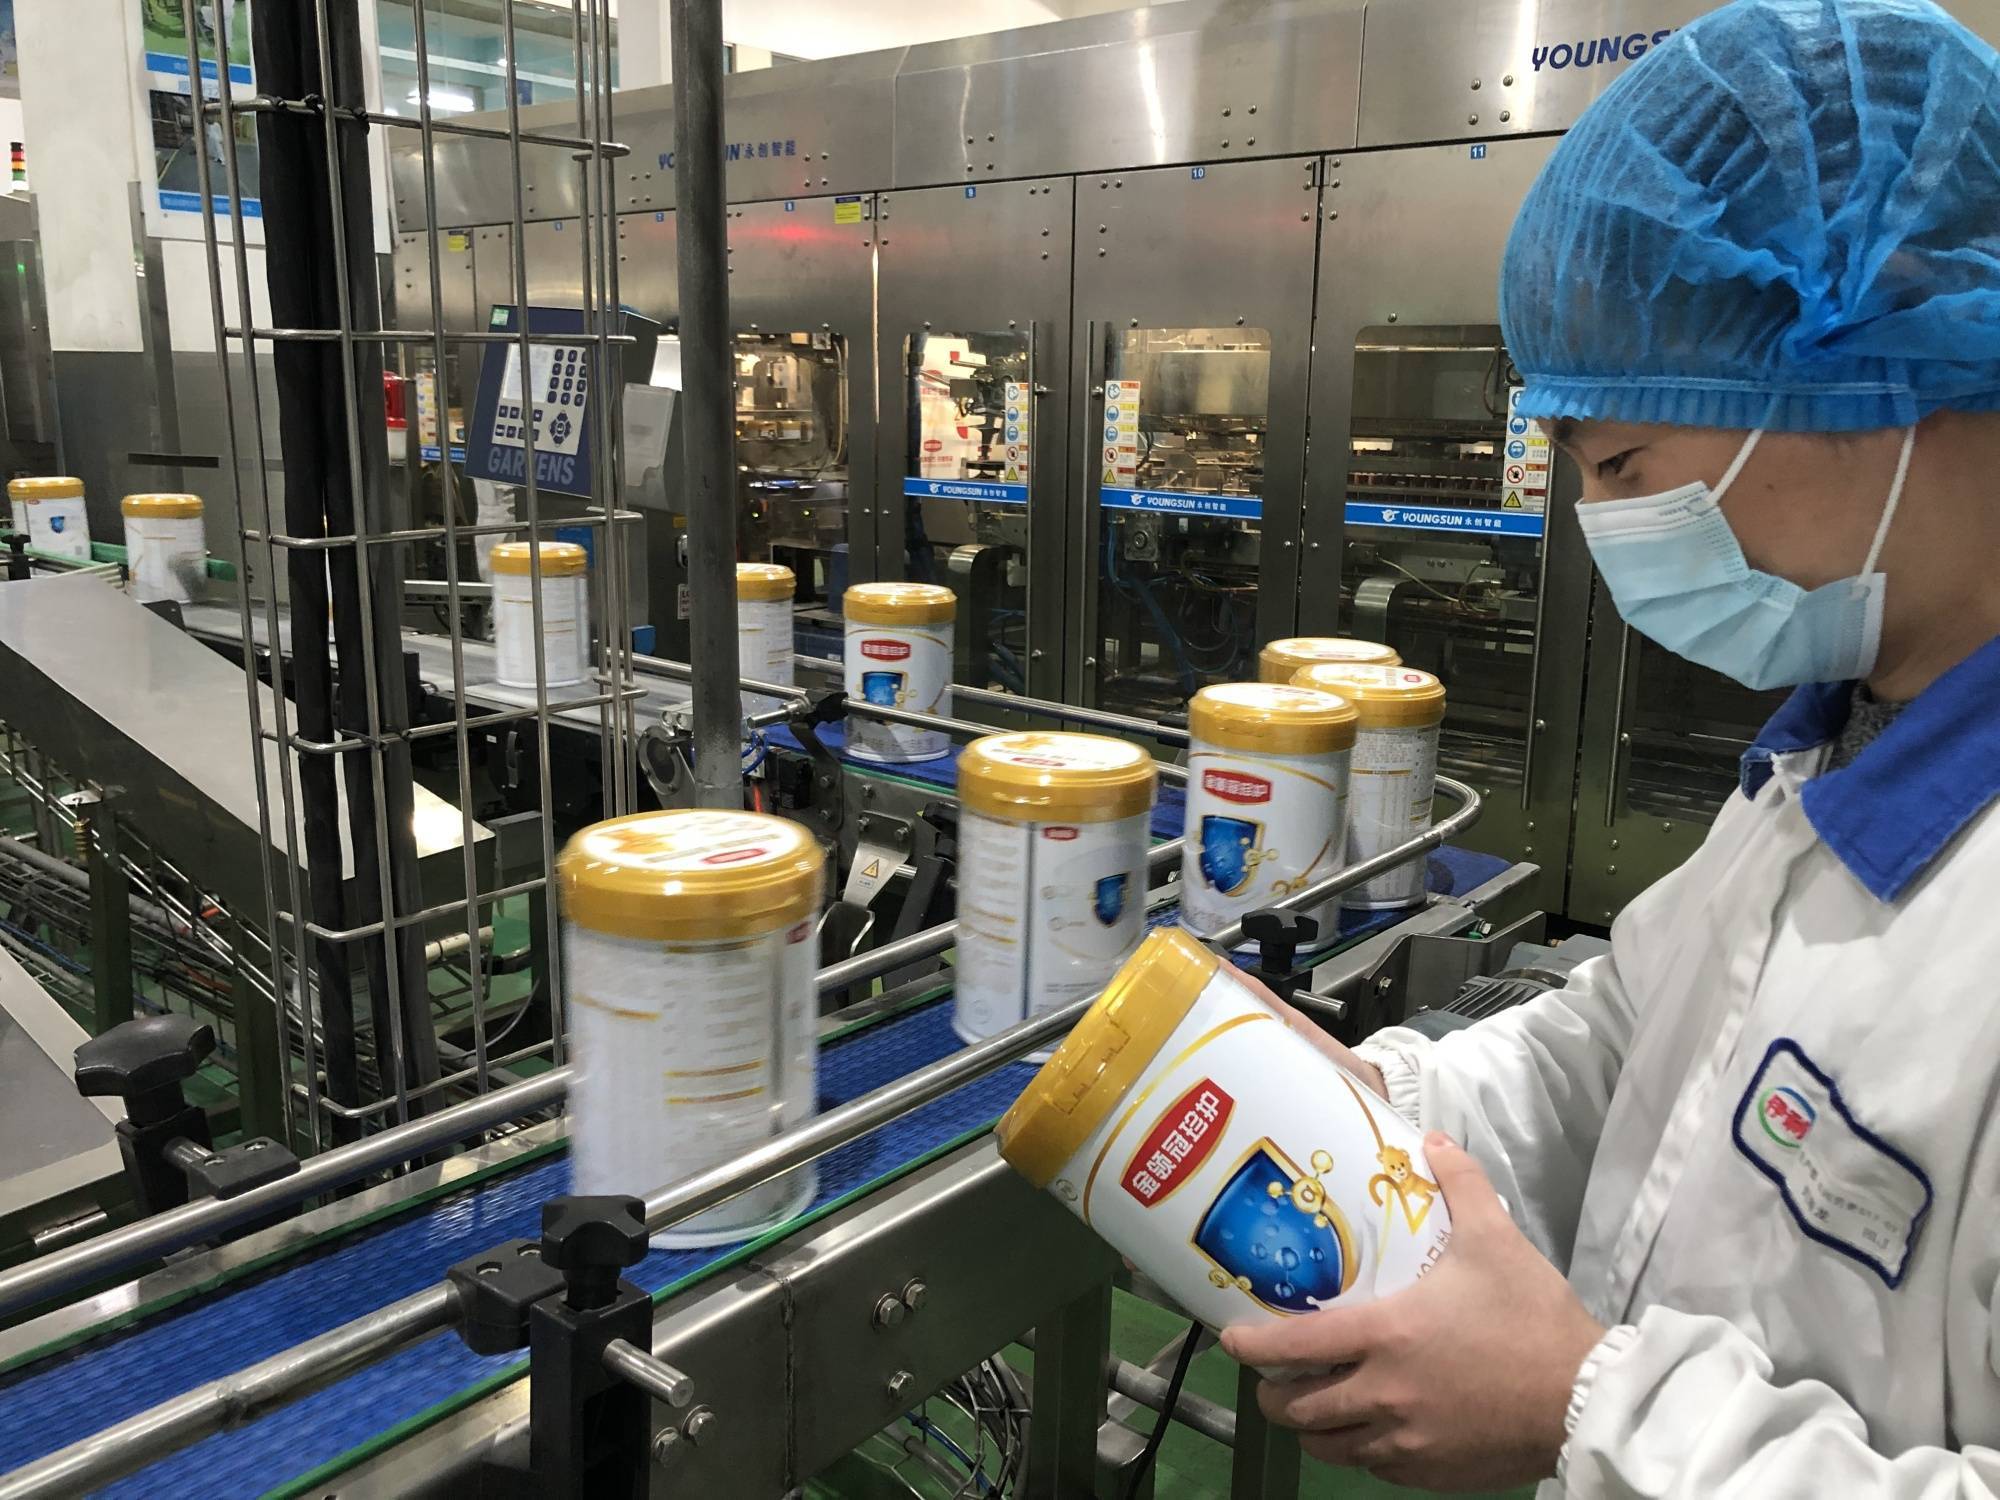 伊利集团奶粉事业部天津工厂的生产车间内早已是一派热火朝天的工作